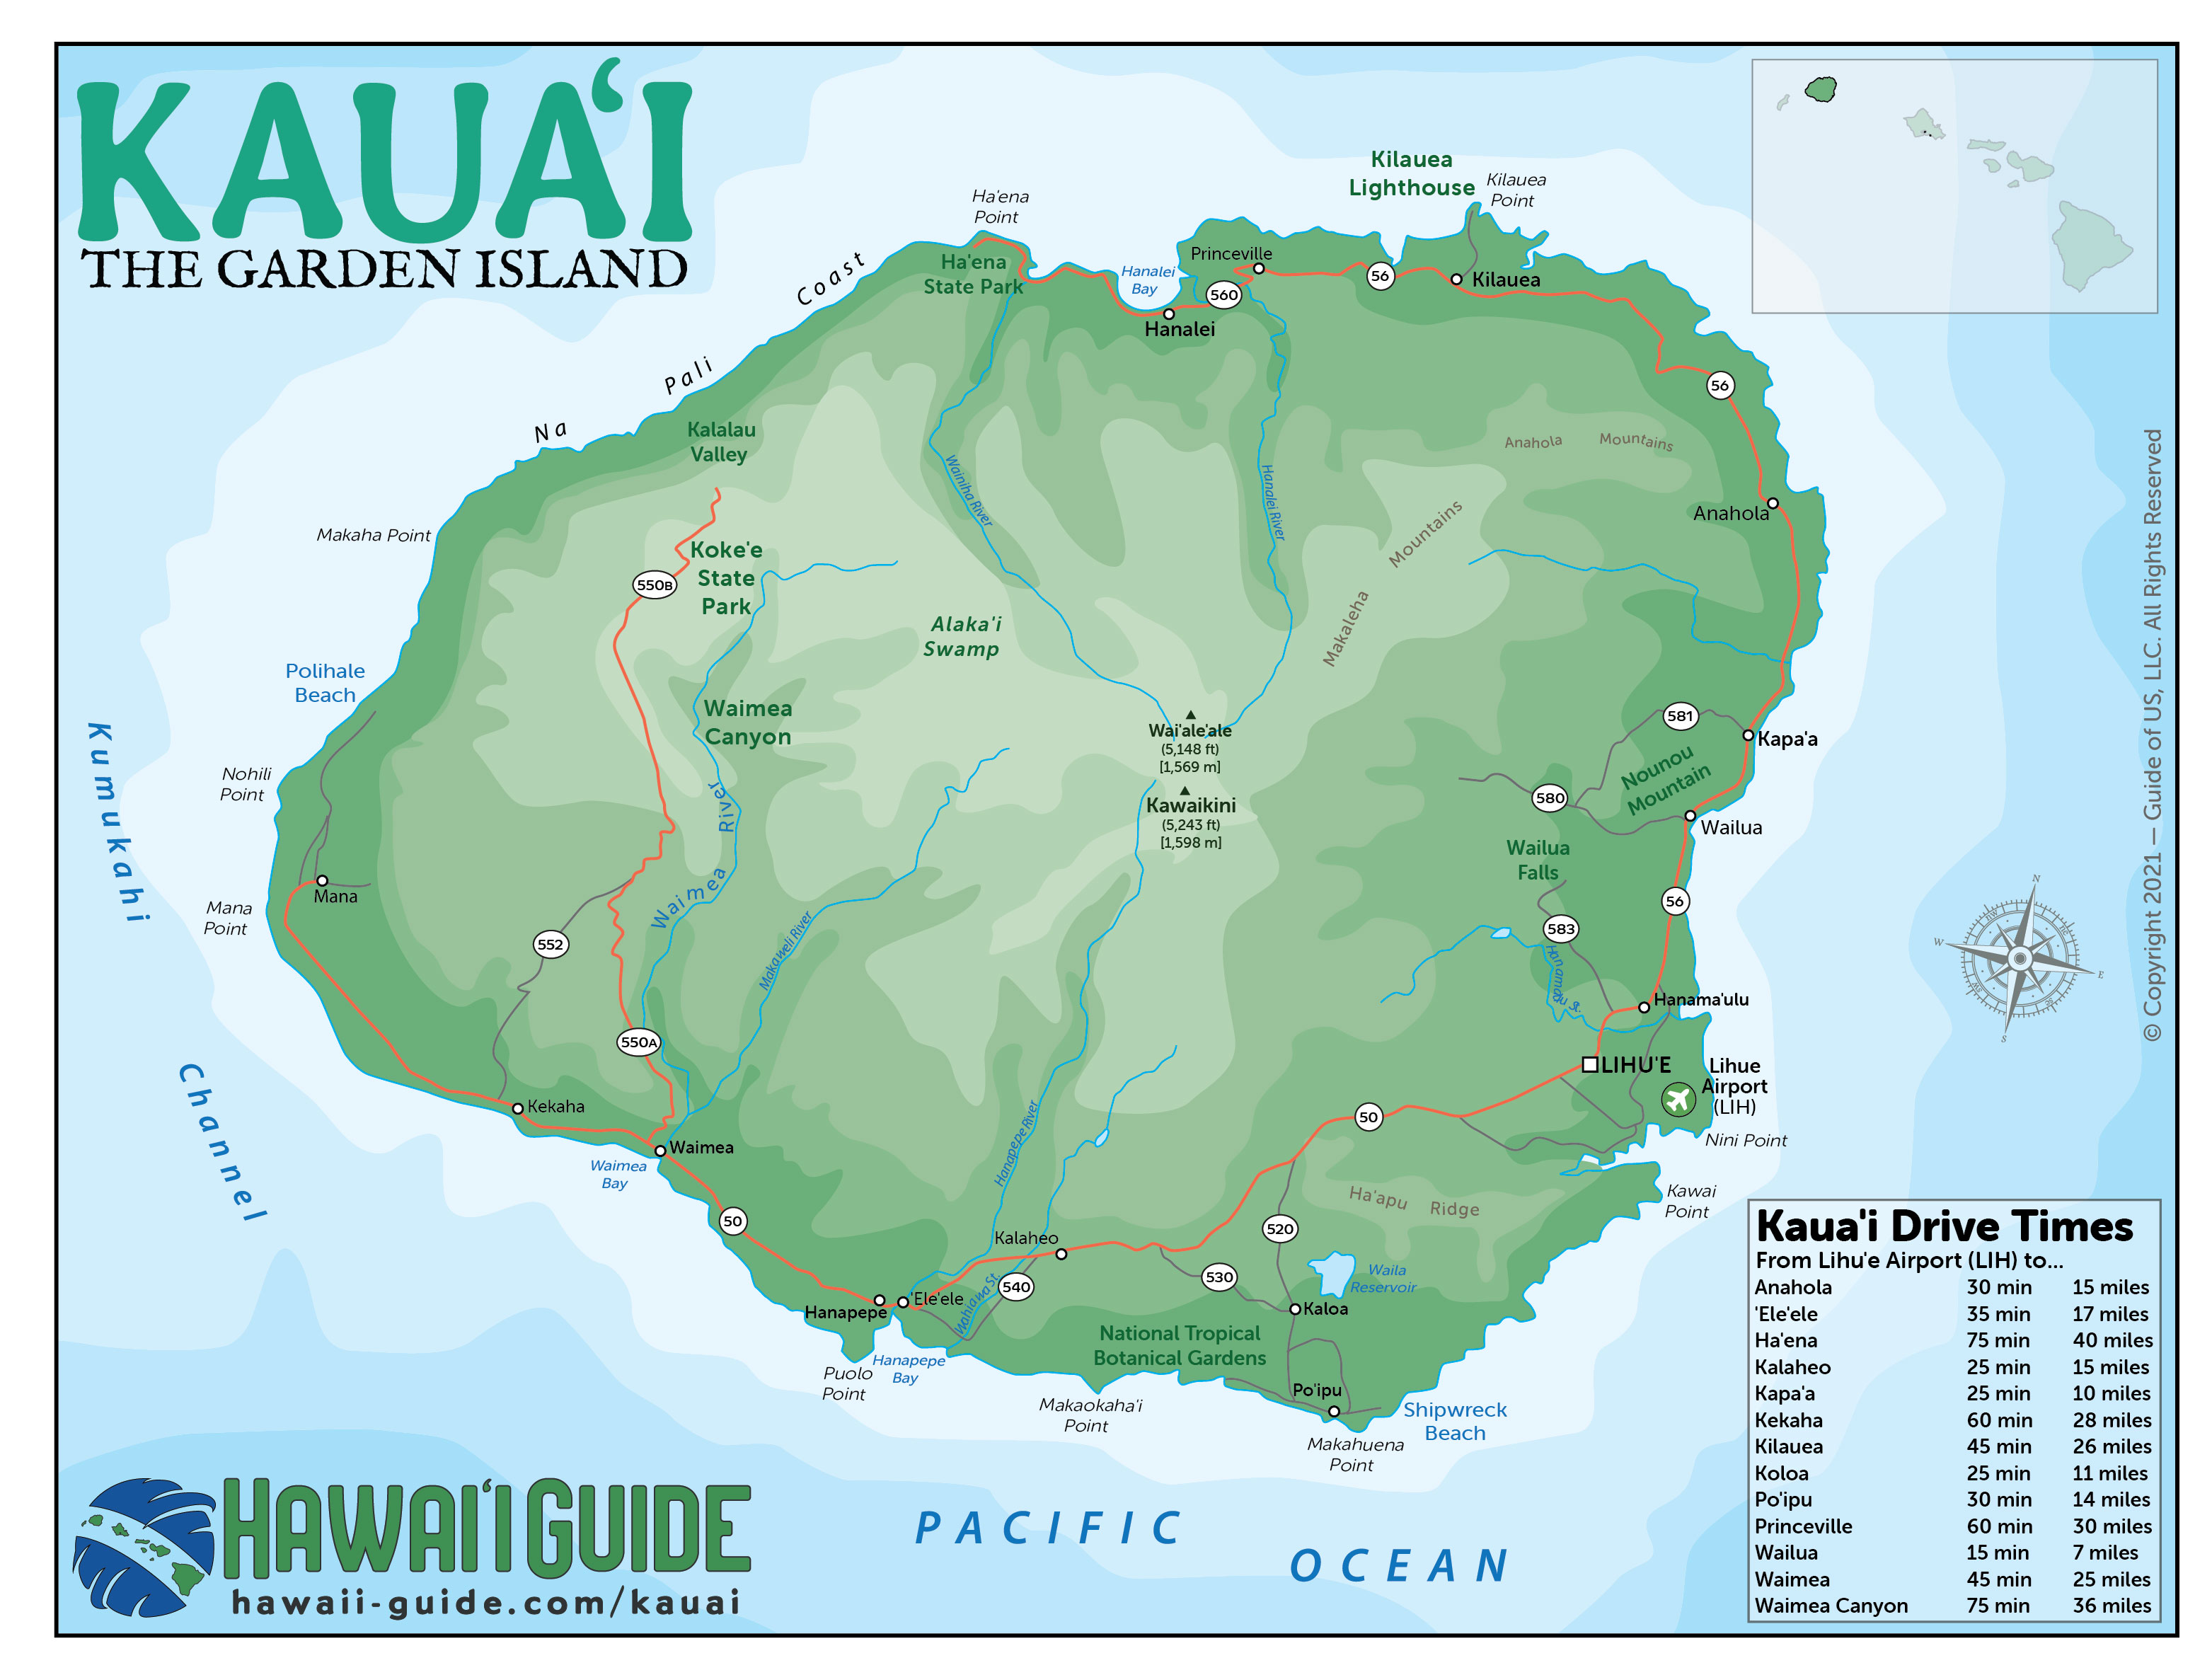 Kauai Hawaii Maps Travel Road Map of Kauai